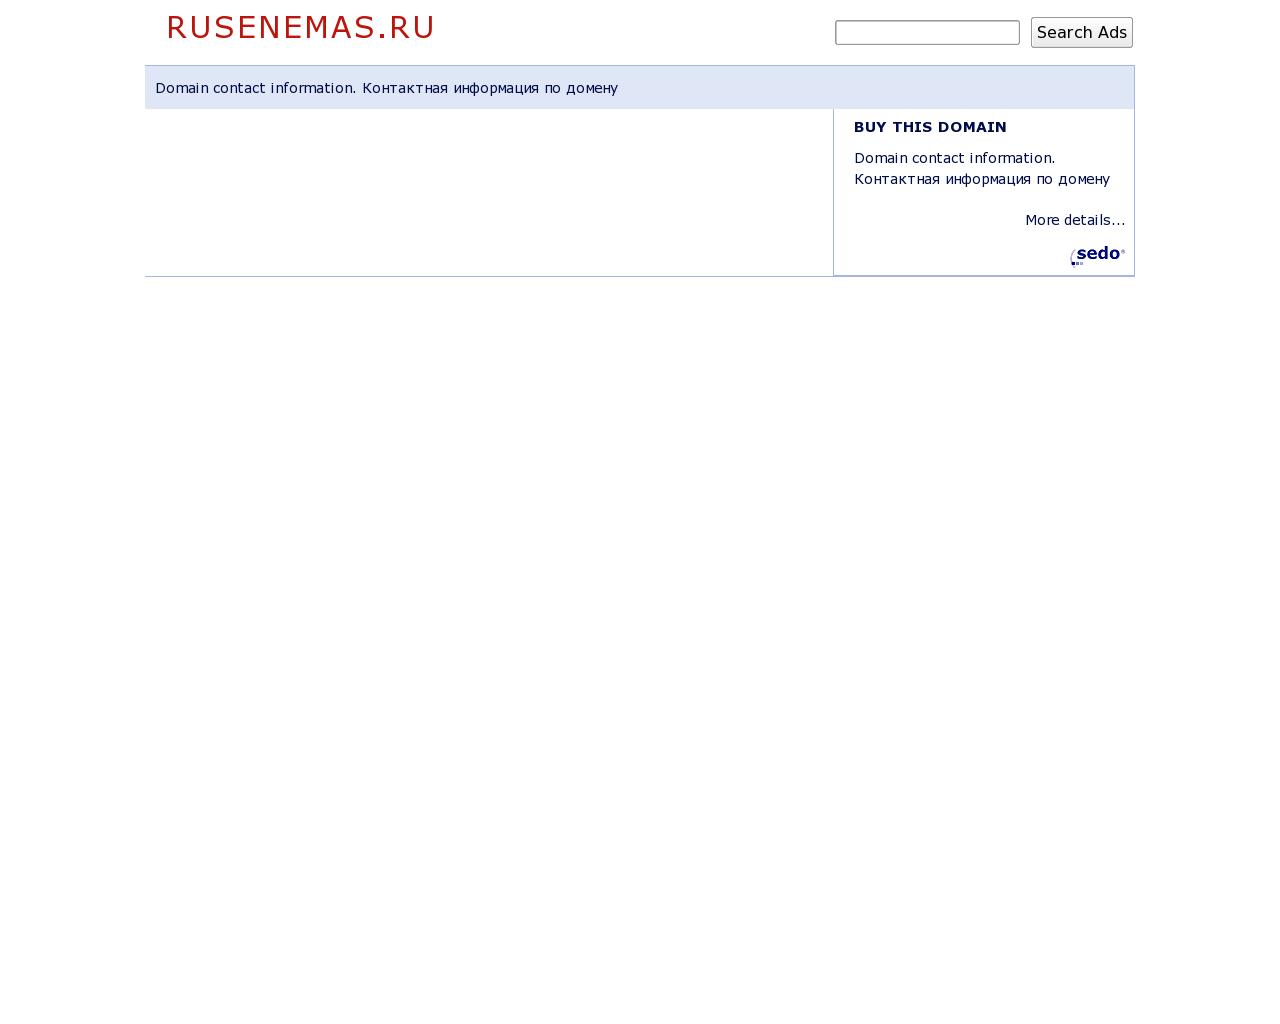 Изображение сайта rusenemas.ru в разрешении 1280x1024